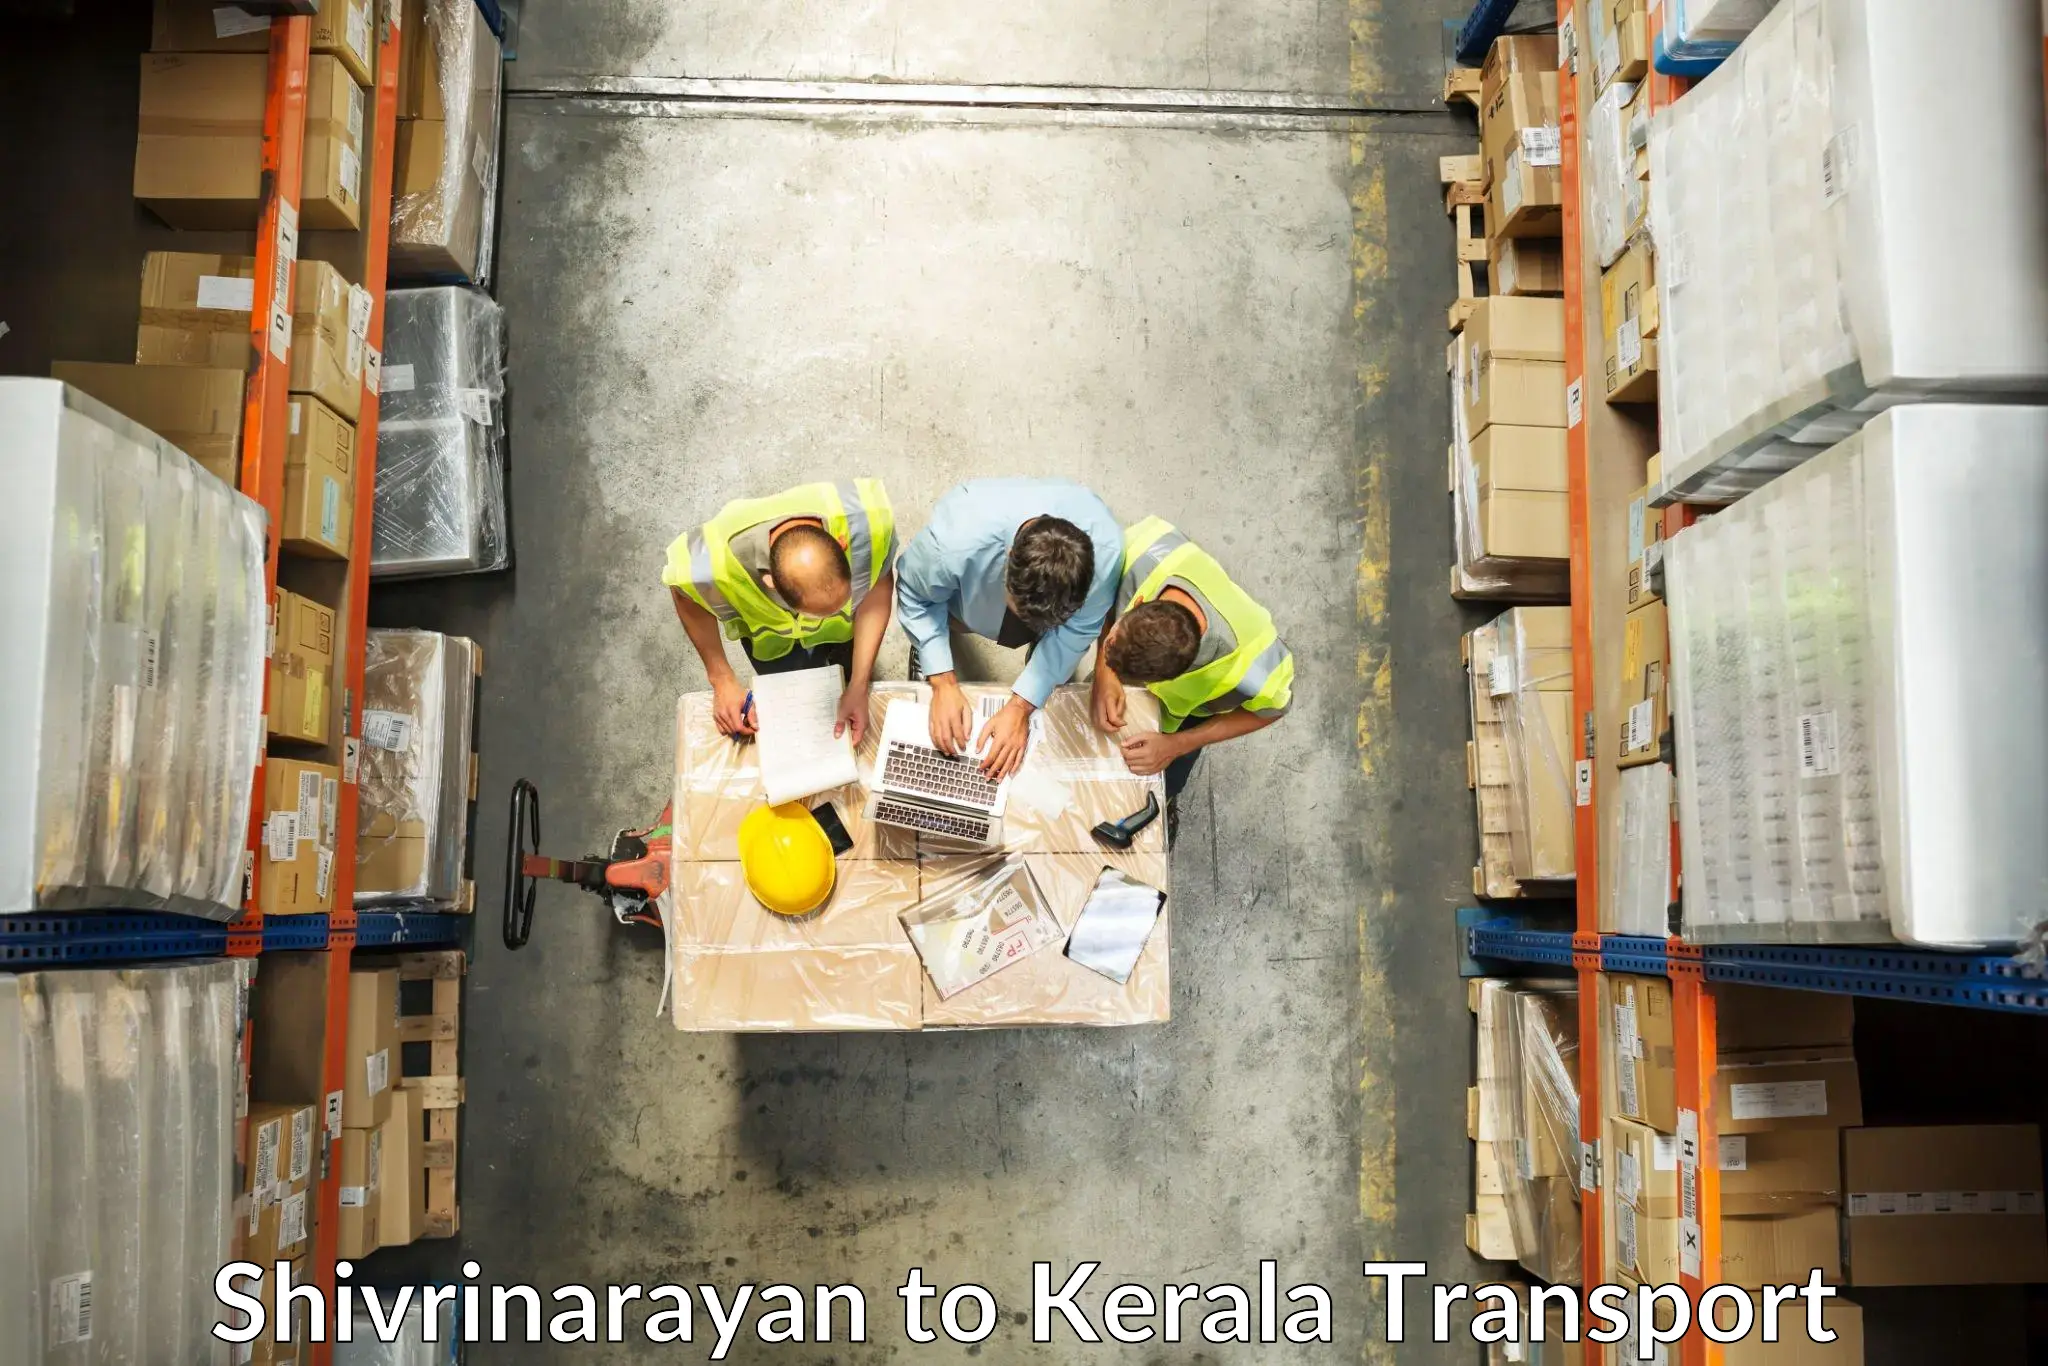 Truck transport companies in India Shivrinarayan to Nileshwar